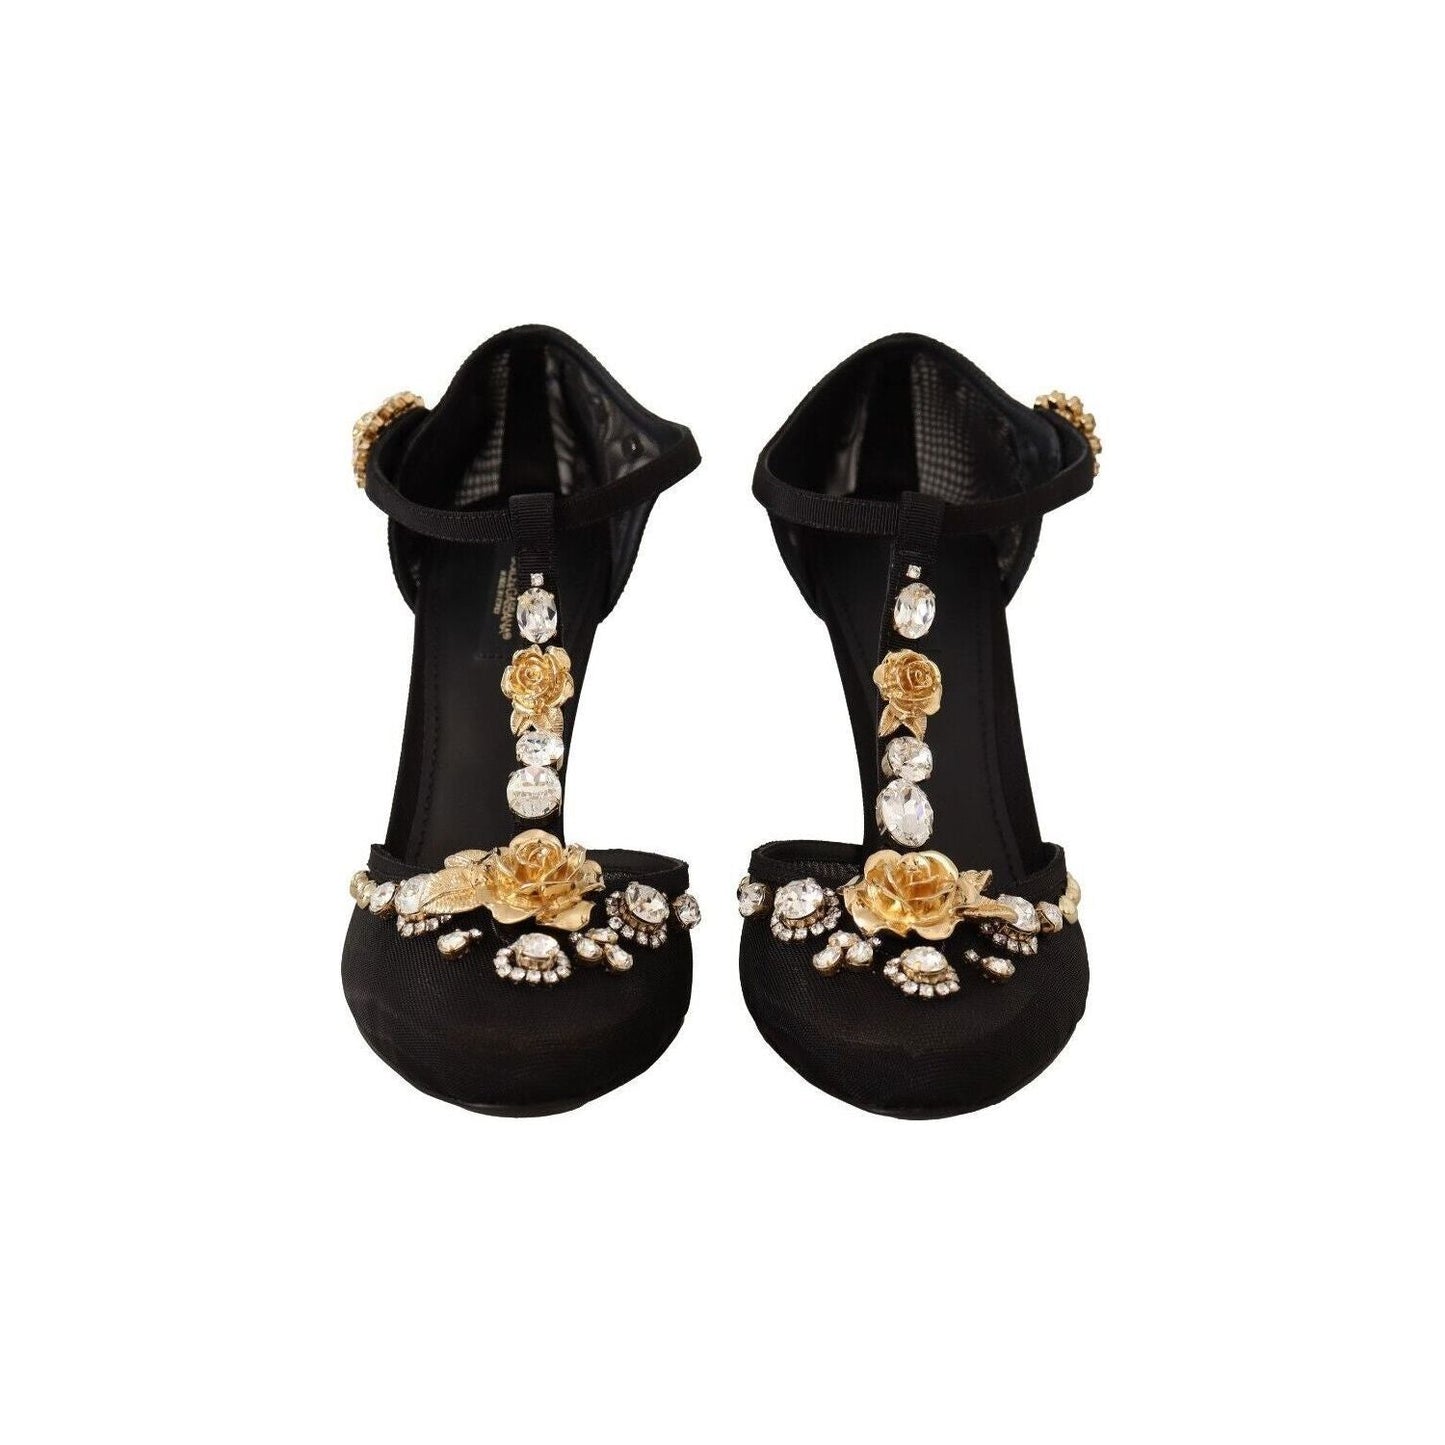 Dolce & Gabbana Elegant Crystal-Embellished Mesh T-Strap Pumps black-mesh-crystals-t-strap-heels-pumps-shoes s-l1600-183-81695117-b24.jpg